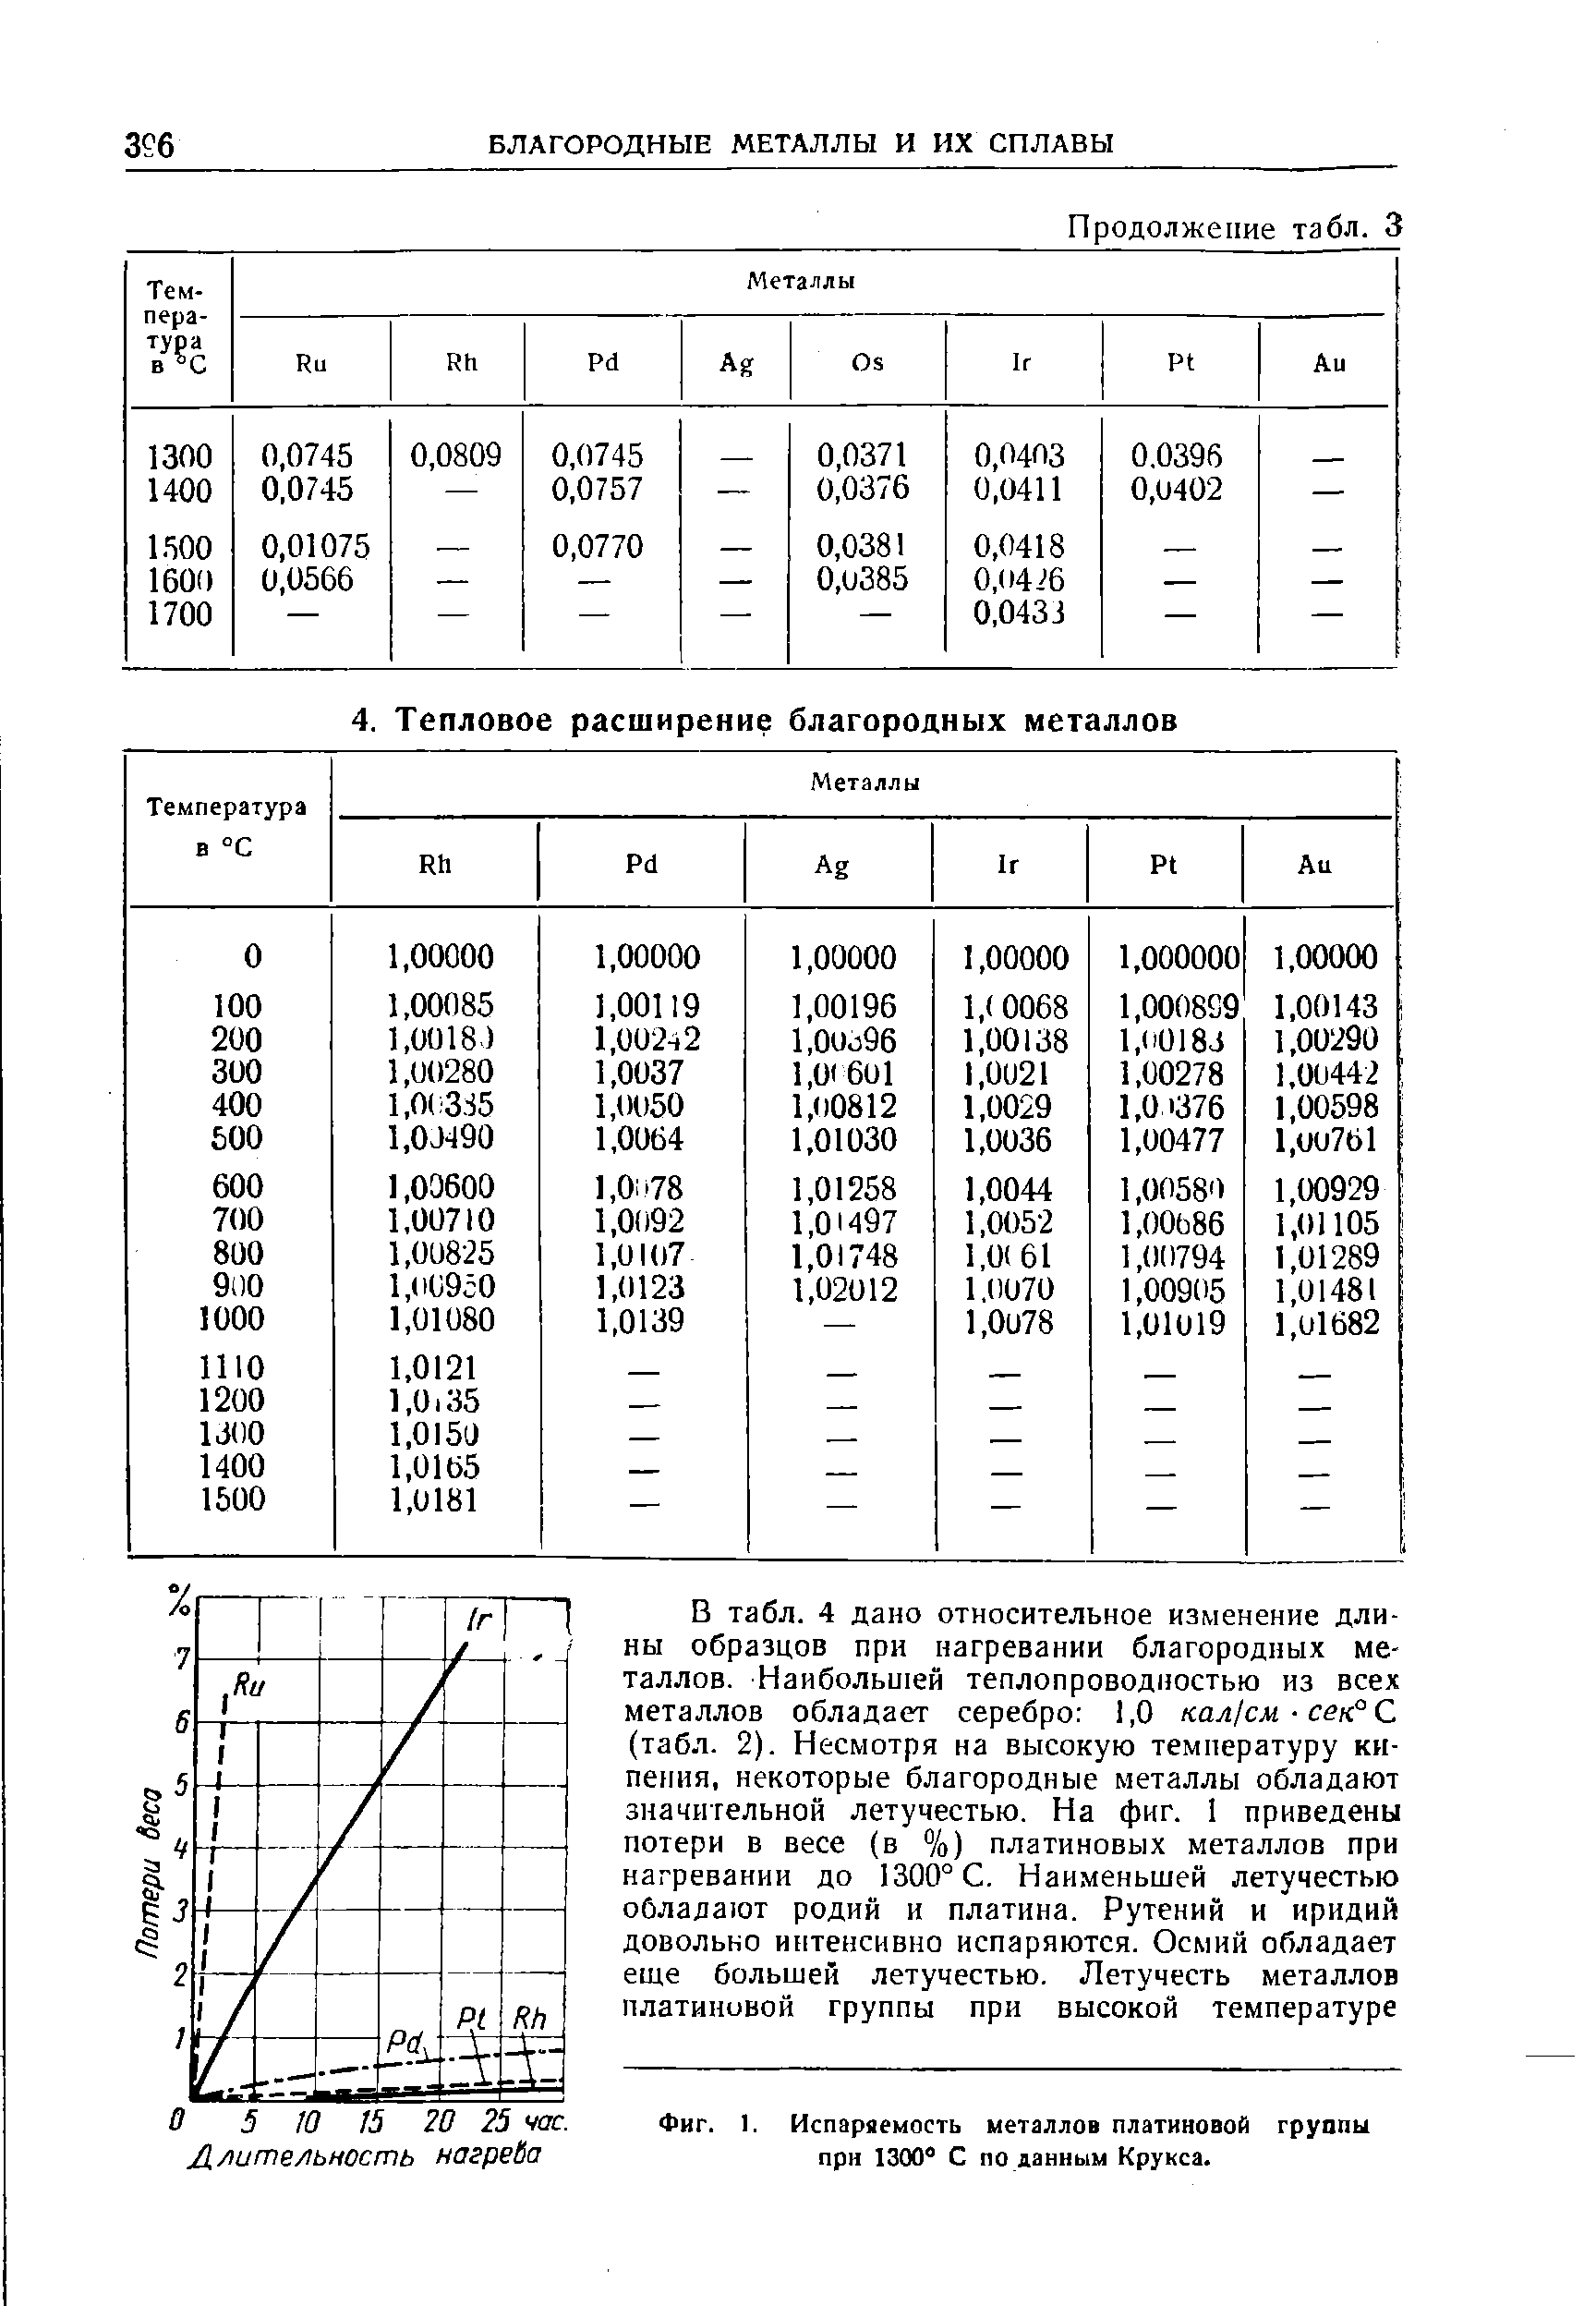 Фиг. 1. Испаряемость <a href="/info/494678">металлов платиновой группы</a> при 1300° С по данным Крукса.
